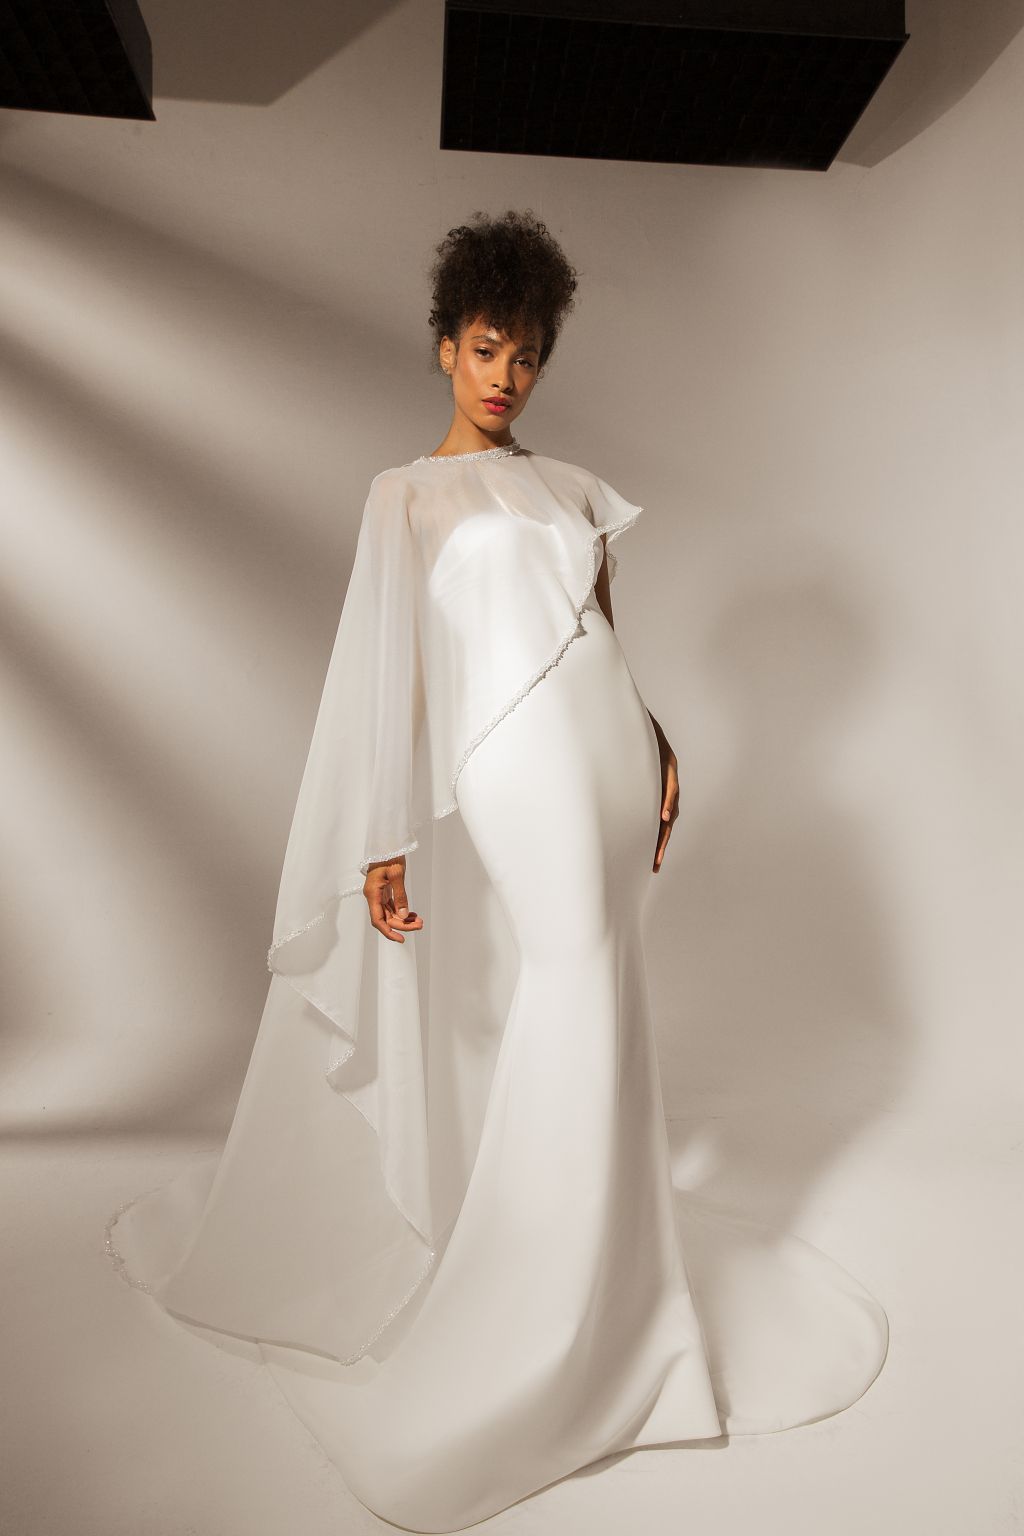 MADEIRA WEDDING DRESS - Europin Tailor